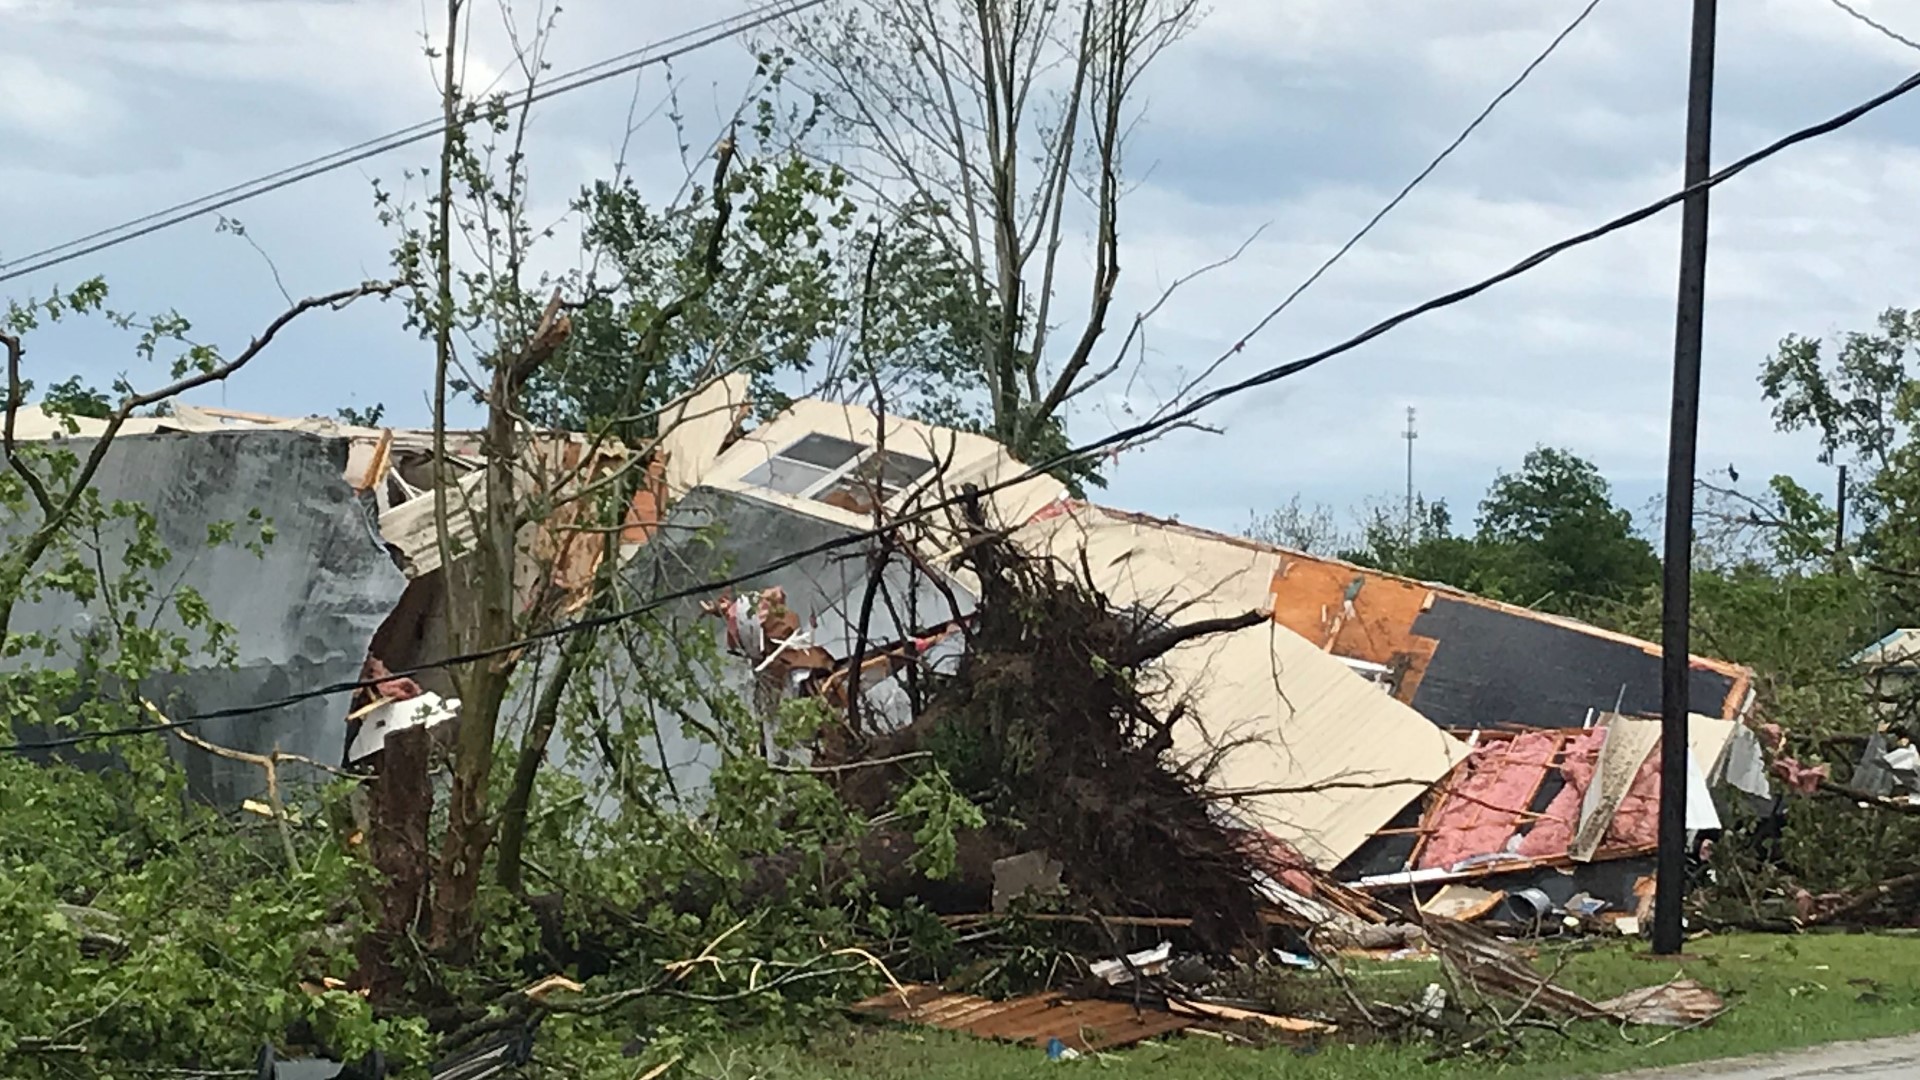 55 homes destroyed after EF3 tornado rips through Franklin | kcentv.com